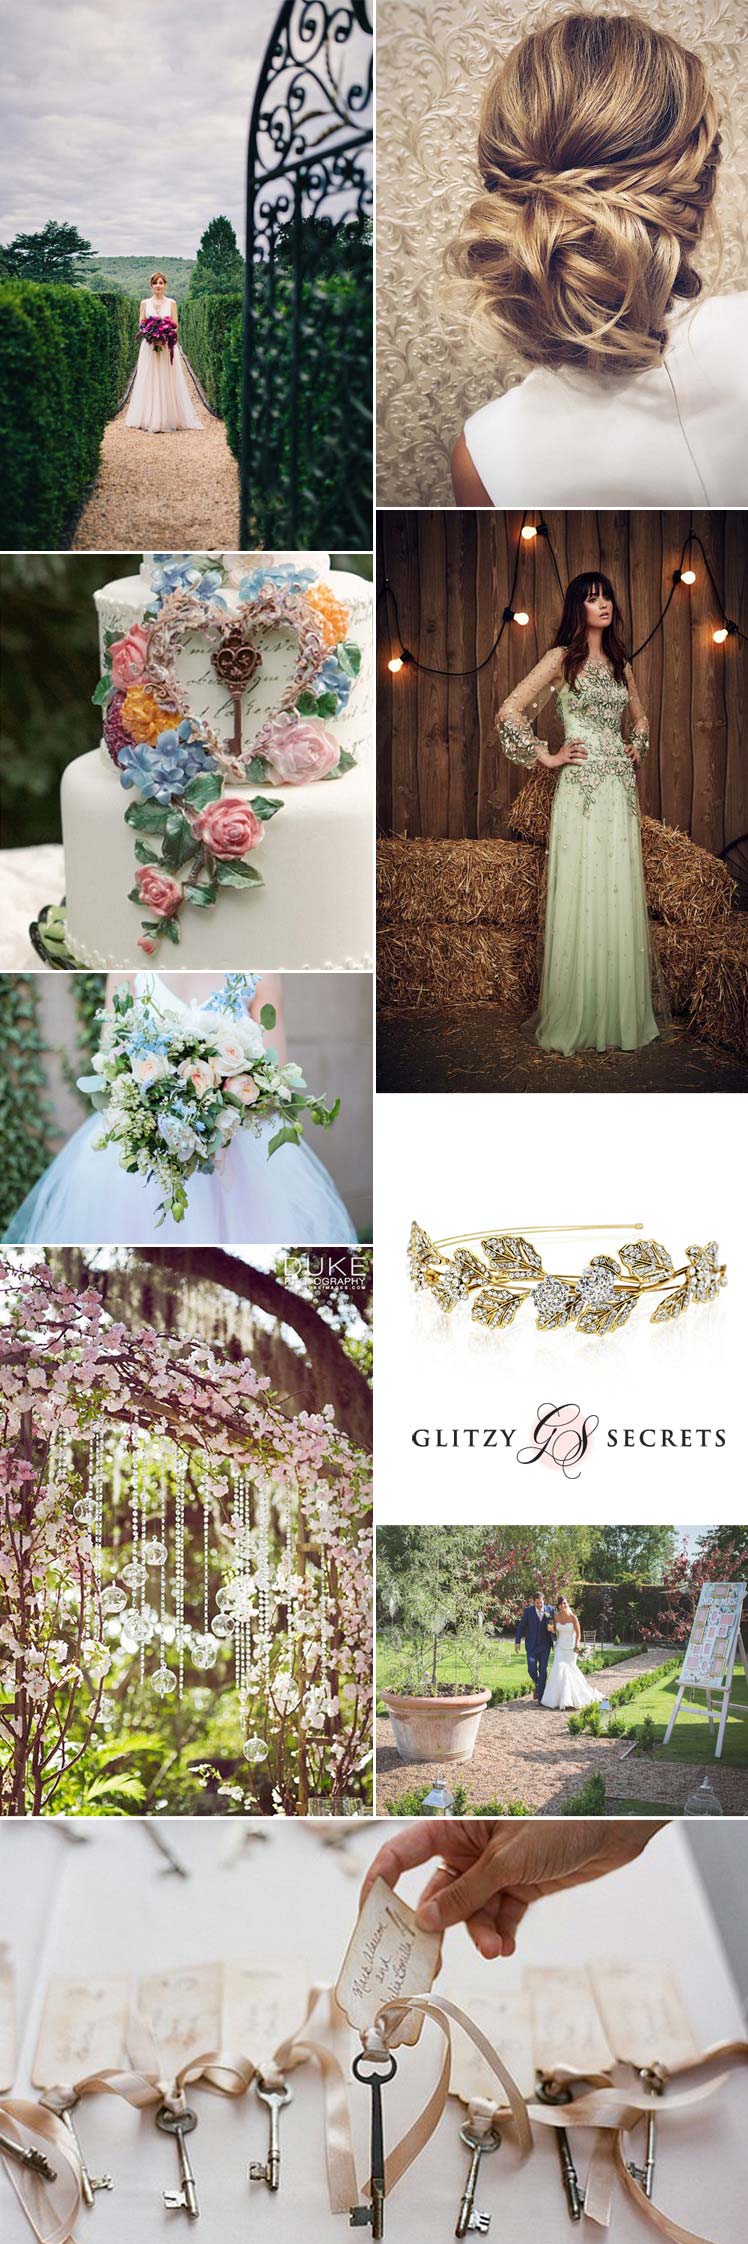 Ideas for a secret garden wedding theme